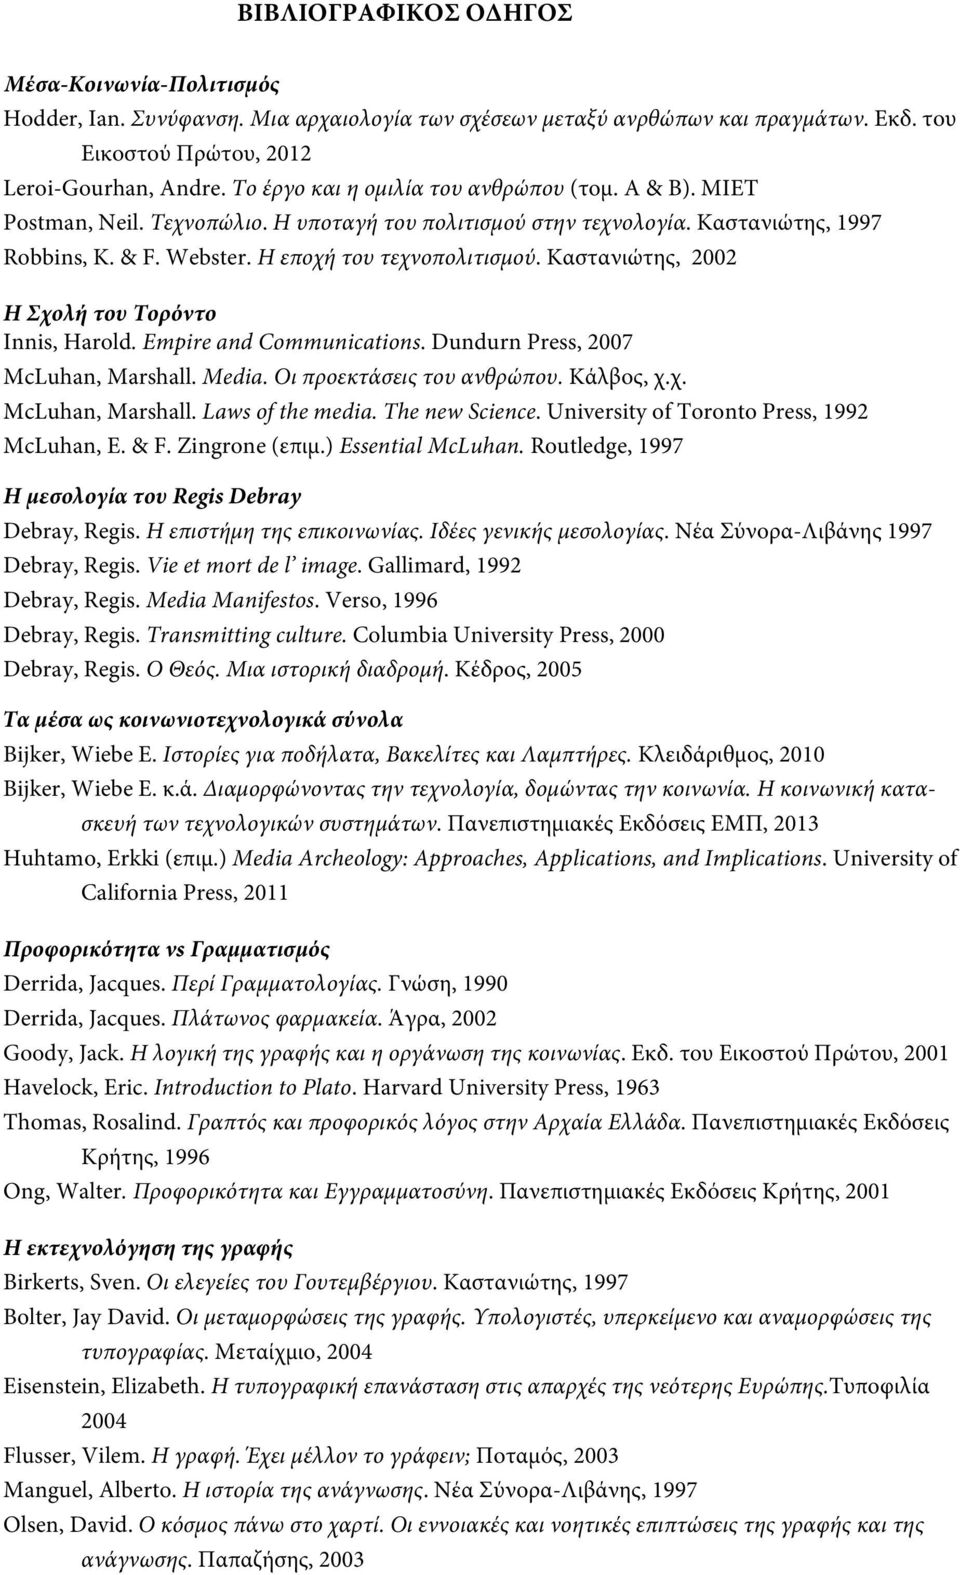 Καστανιώτης, 2002 Η Σχολή του Τορόντο Innis, Harold. Εmpire and Communications. Dundurn Press, 2007 McLuhan, Marshall. Media. Οι προεκτάσεις του ανθρώπου. Κάλβος, χ.χ. McLuhan, Marshall. Laws of the media.